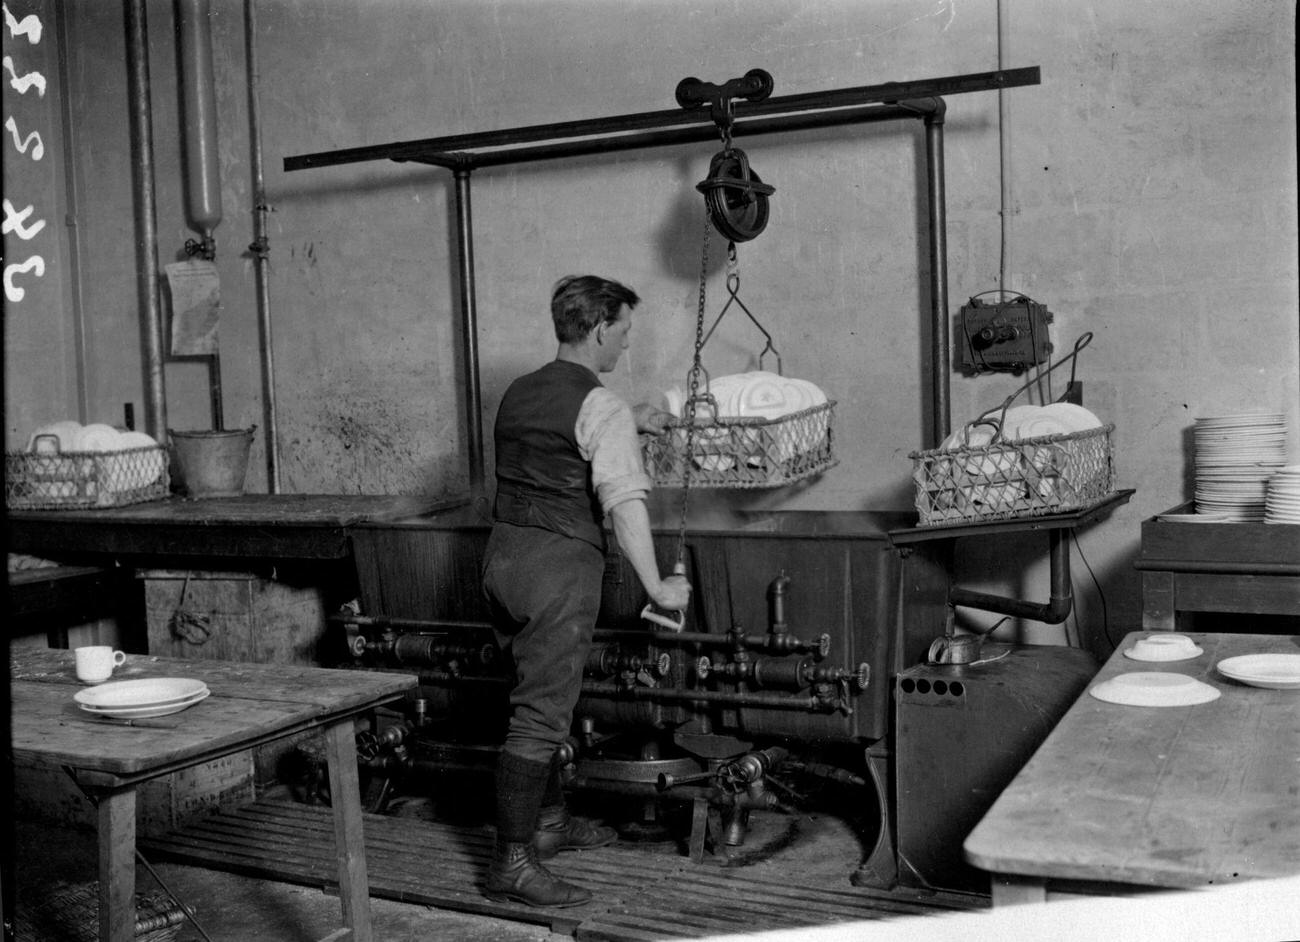 Man operating an electrical dishwashing gadget, 1922.